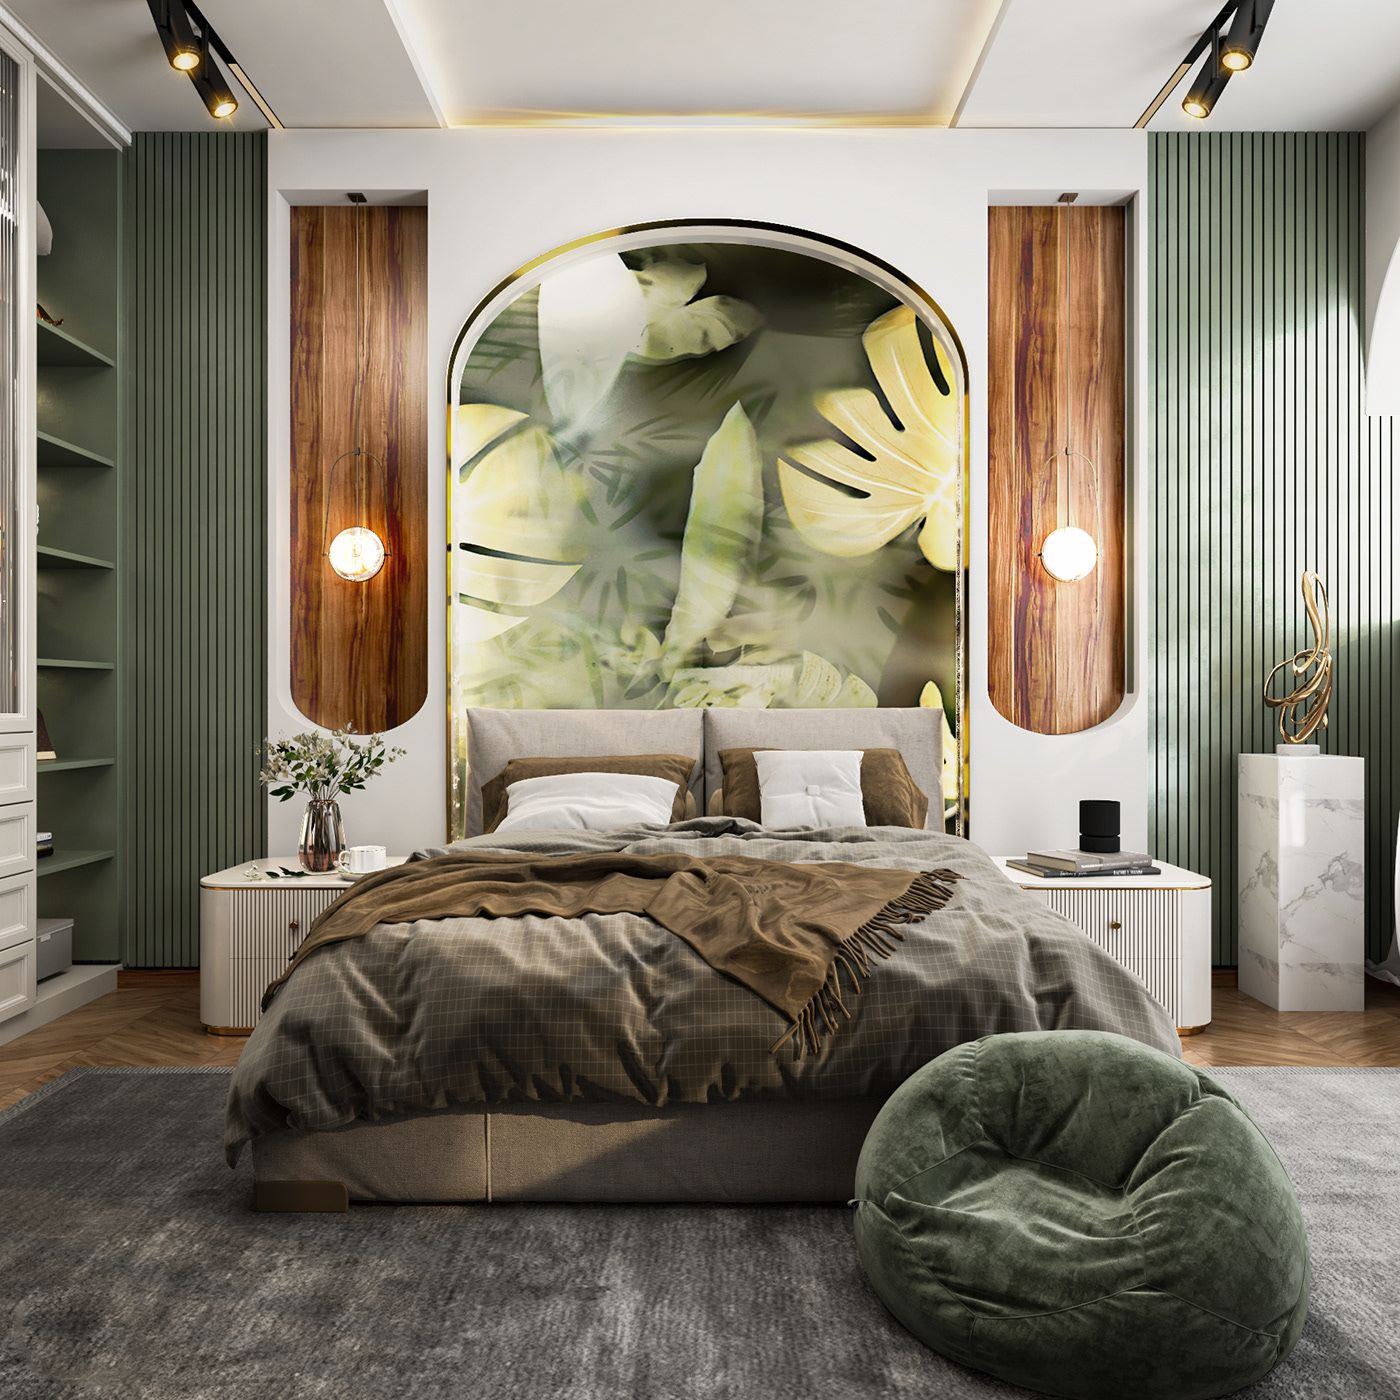 Phòng ngủ ngập tràn cây xanh và ánh sáng tự nhiên mang đến cảm giác thoáng đãng và trong lành